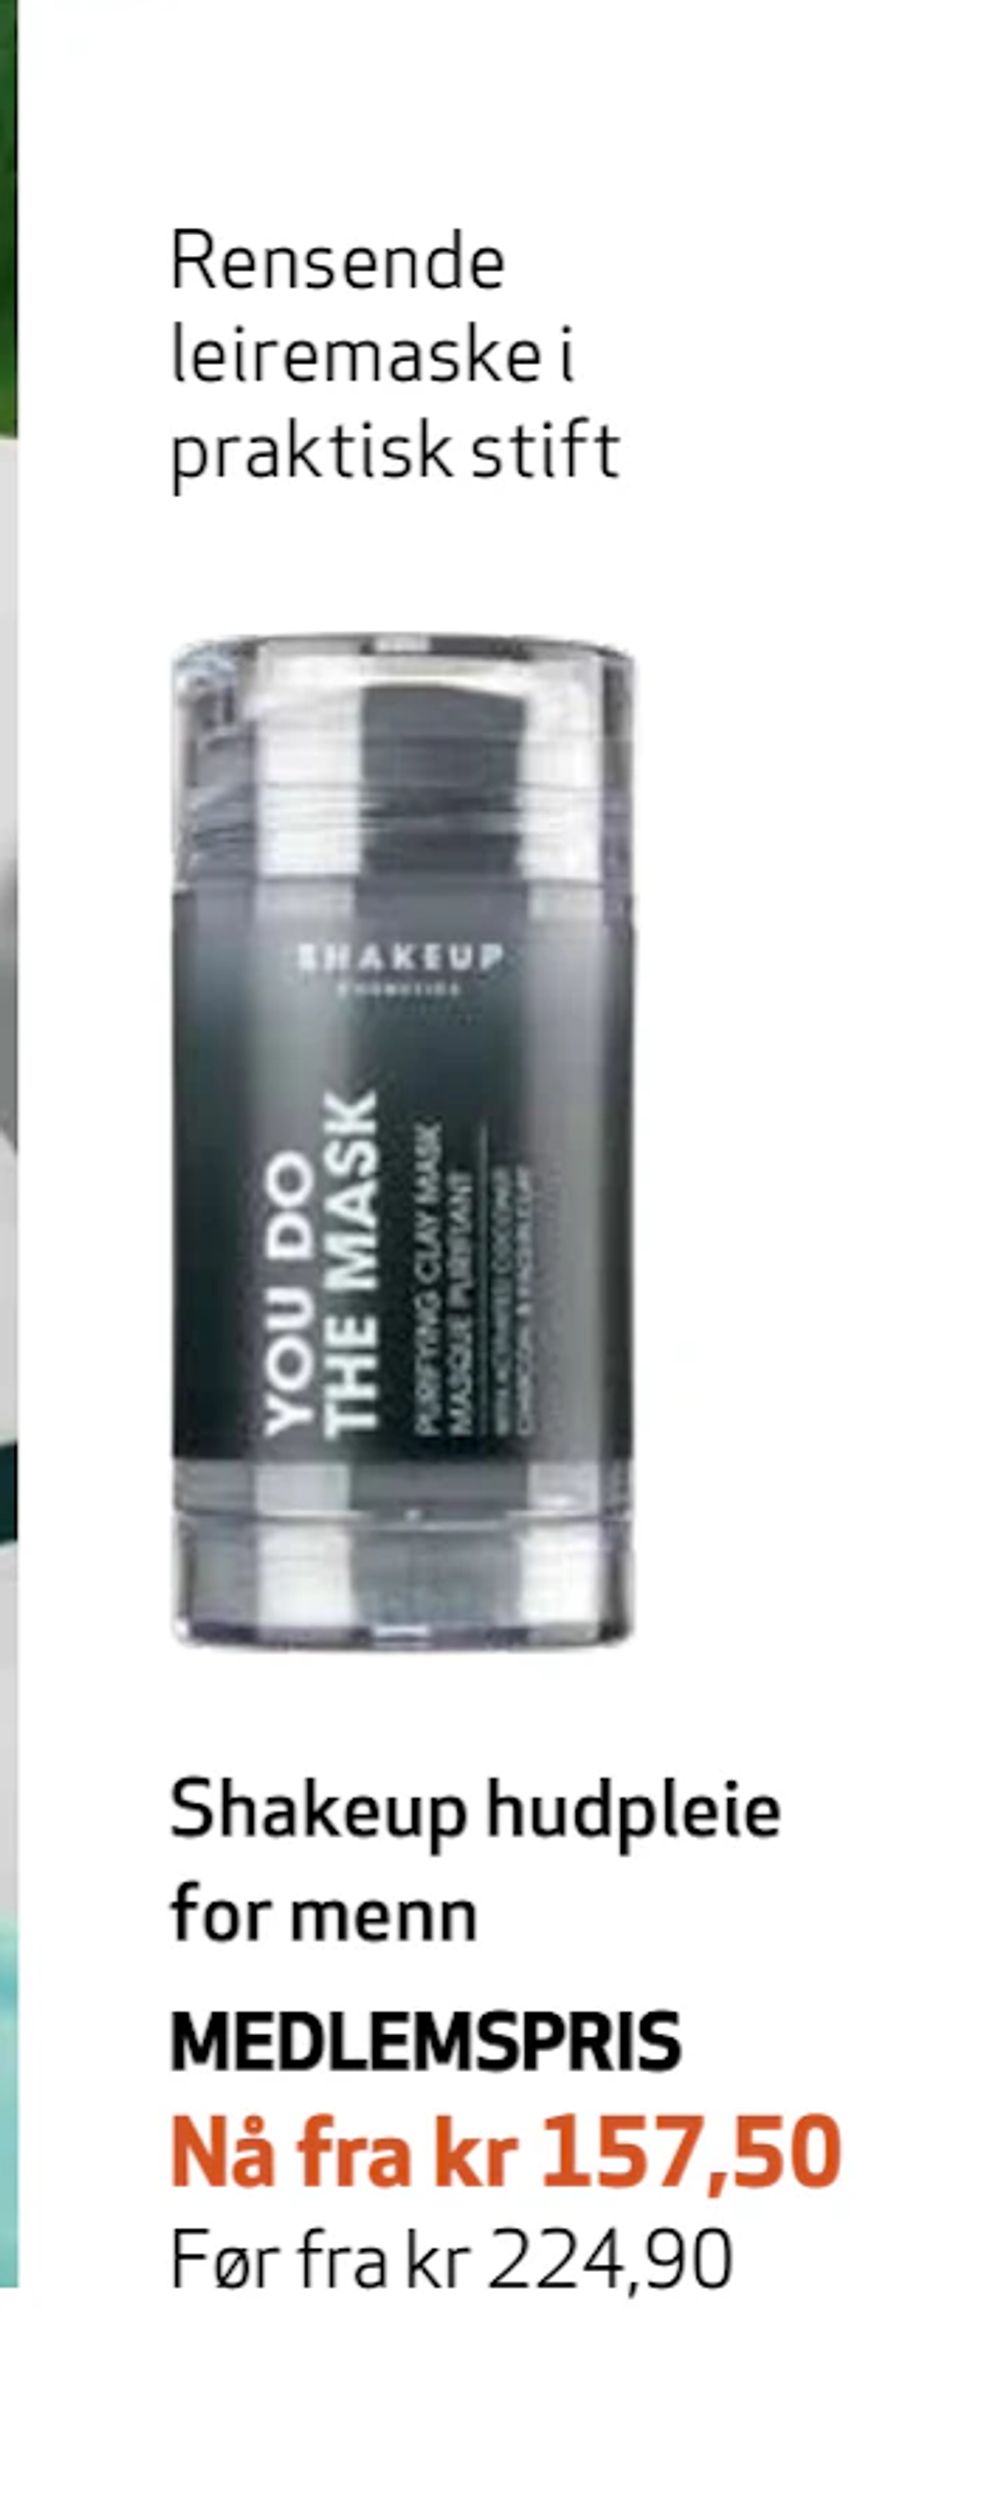 Tilbud på Shakeup hudpleie for menn fra Apotek 1 til 157,50 kr